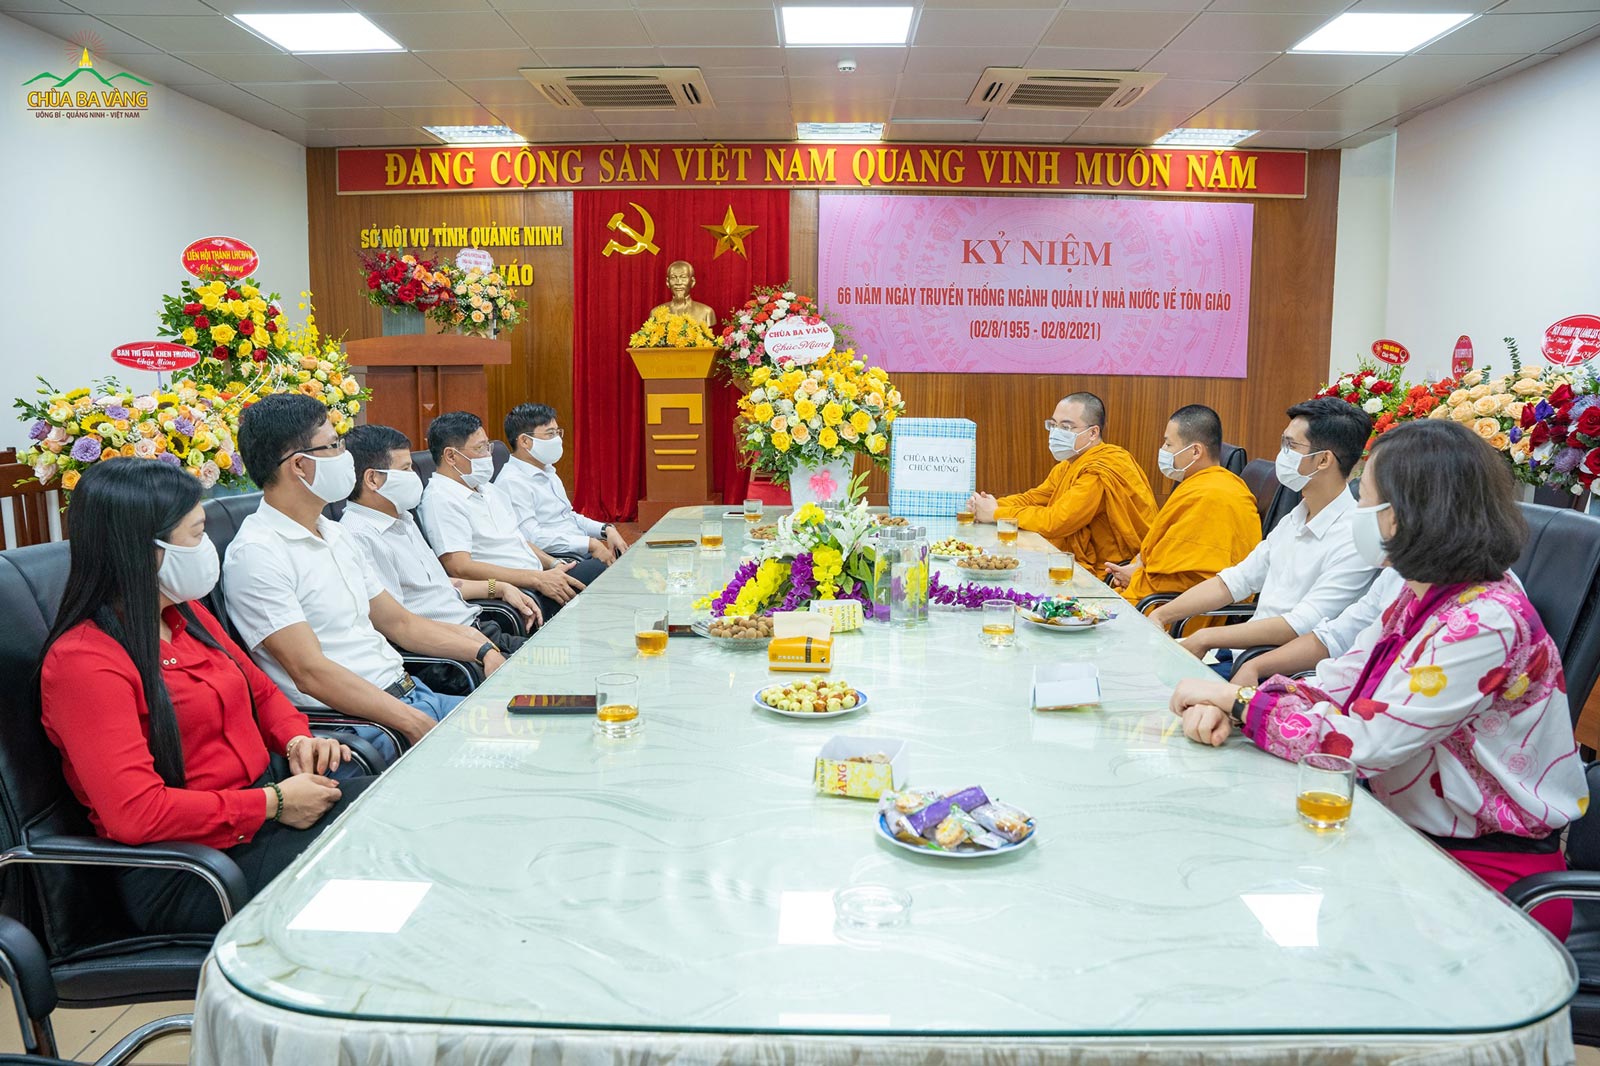 Chư Tăng chùa Ba Vàng đã đến Ban Tôn giáo tỉnh Quảng Ninh để chúc mừng kỷ niệm 66 năm Ngày truyền thống ngành Quản lý Nhà nước về tôn giáo